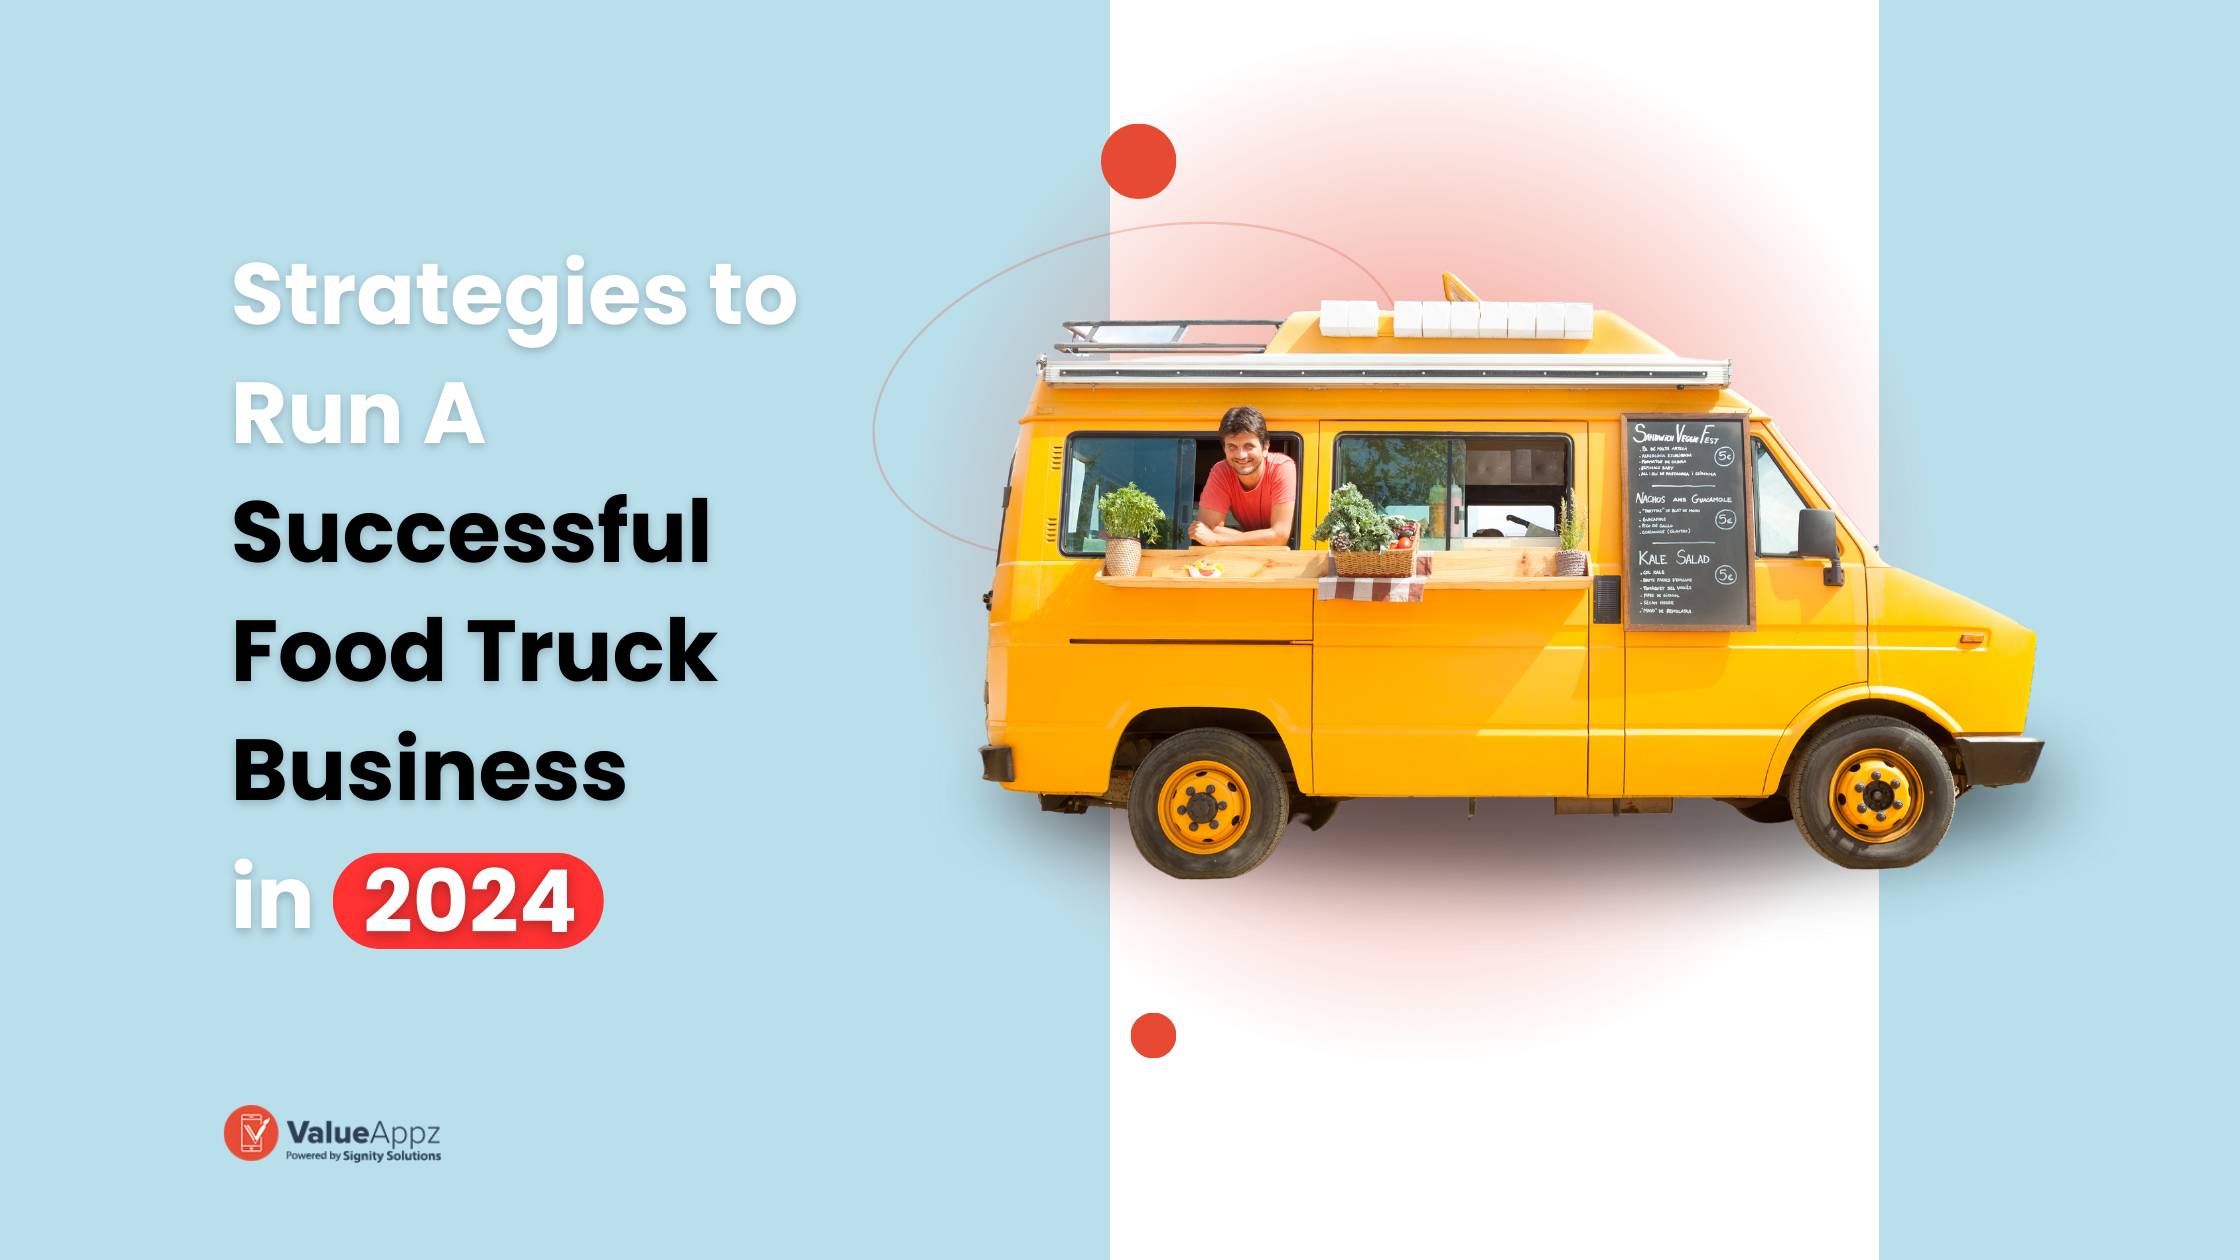 Run a Successful Food Truck Business